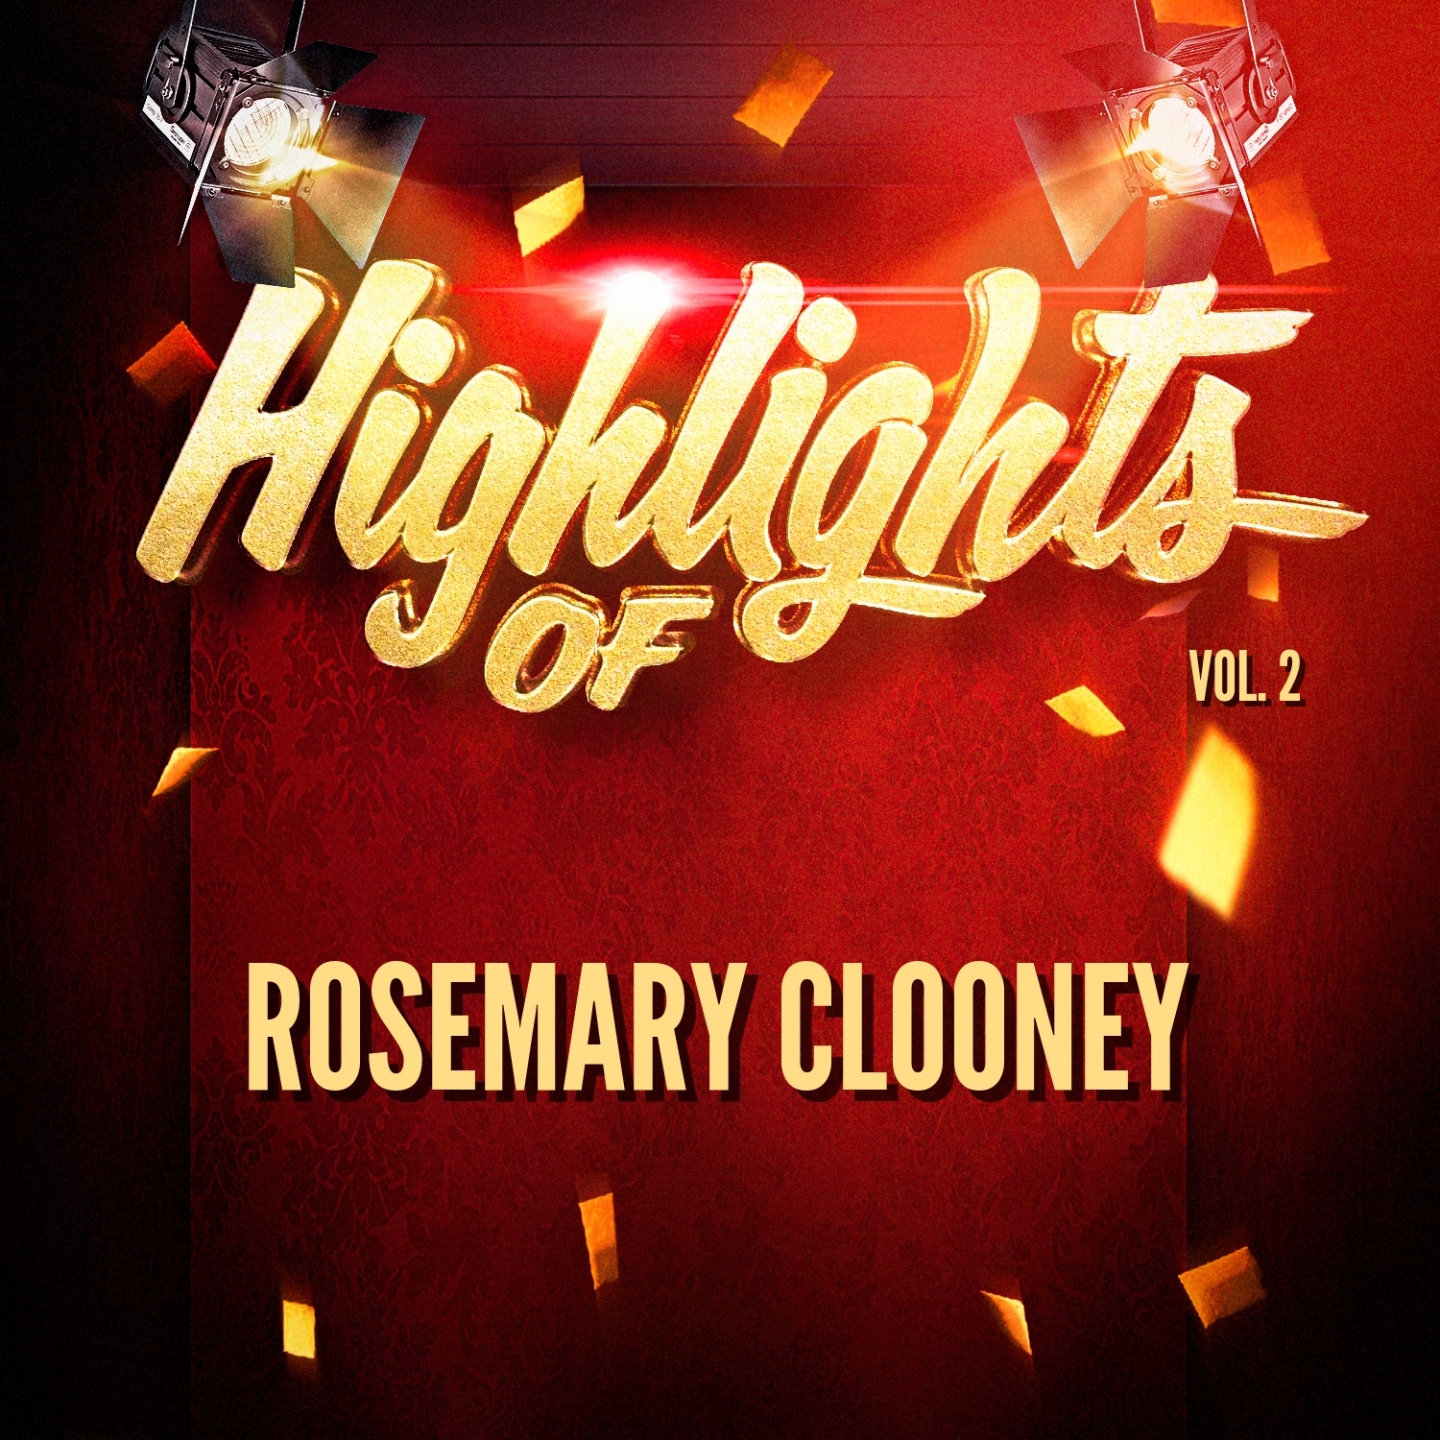 Highlights of Rosemary Clooney, Vol. 2